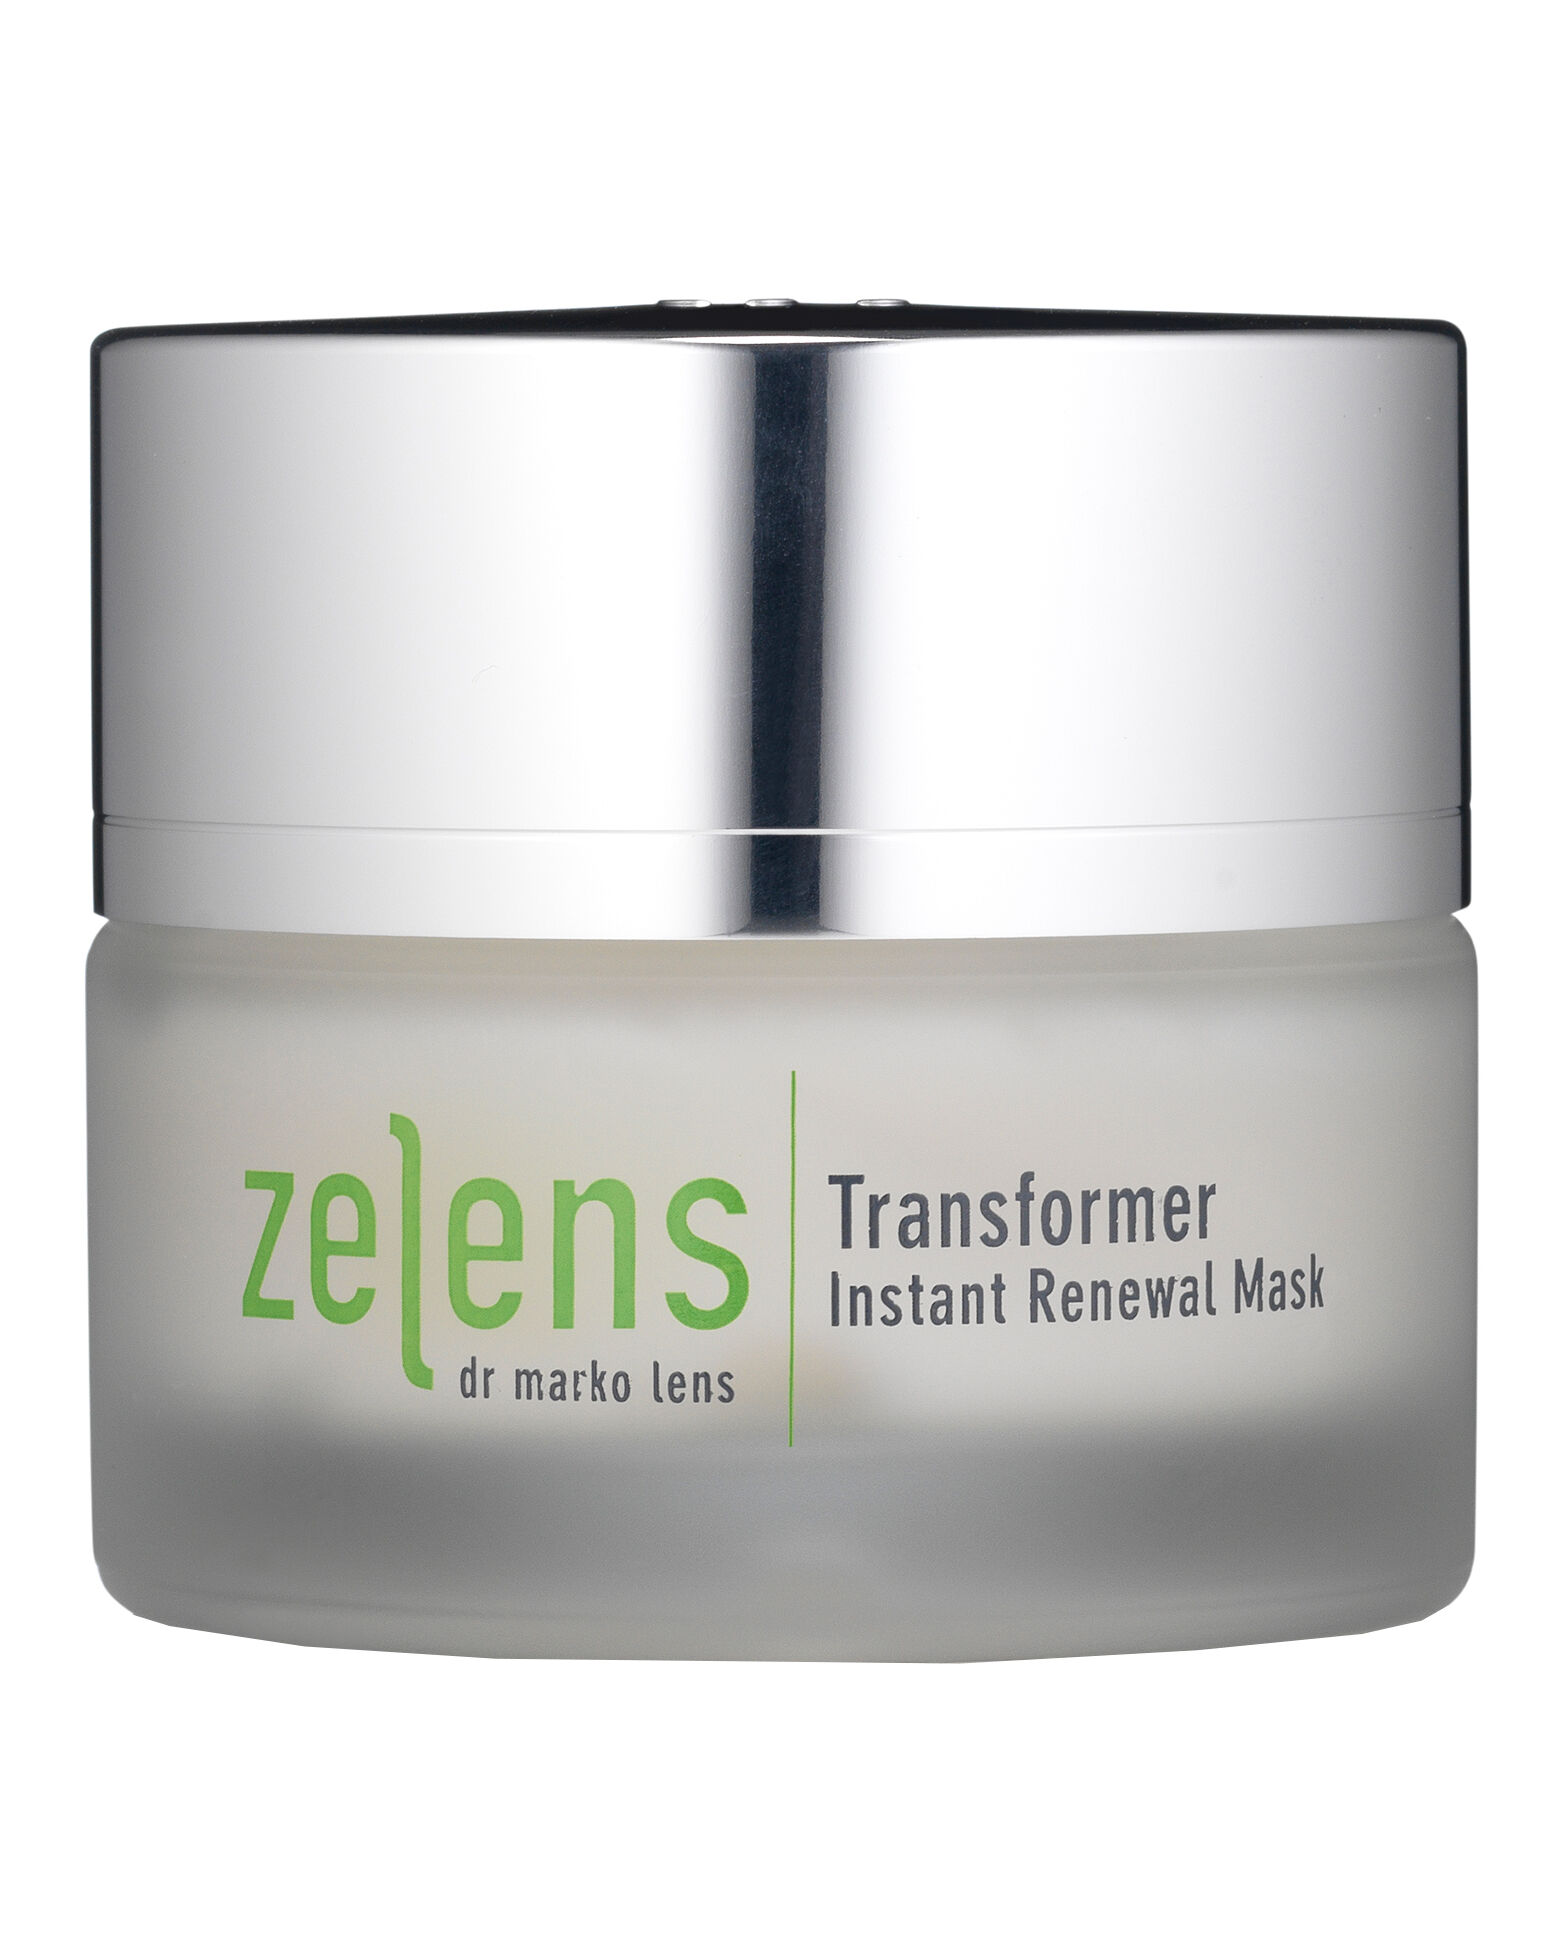 Zelens - Transformer Instant Renewal Mask